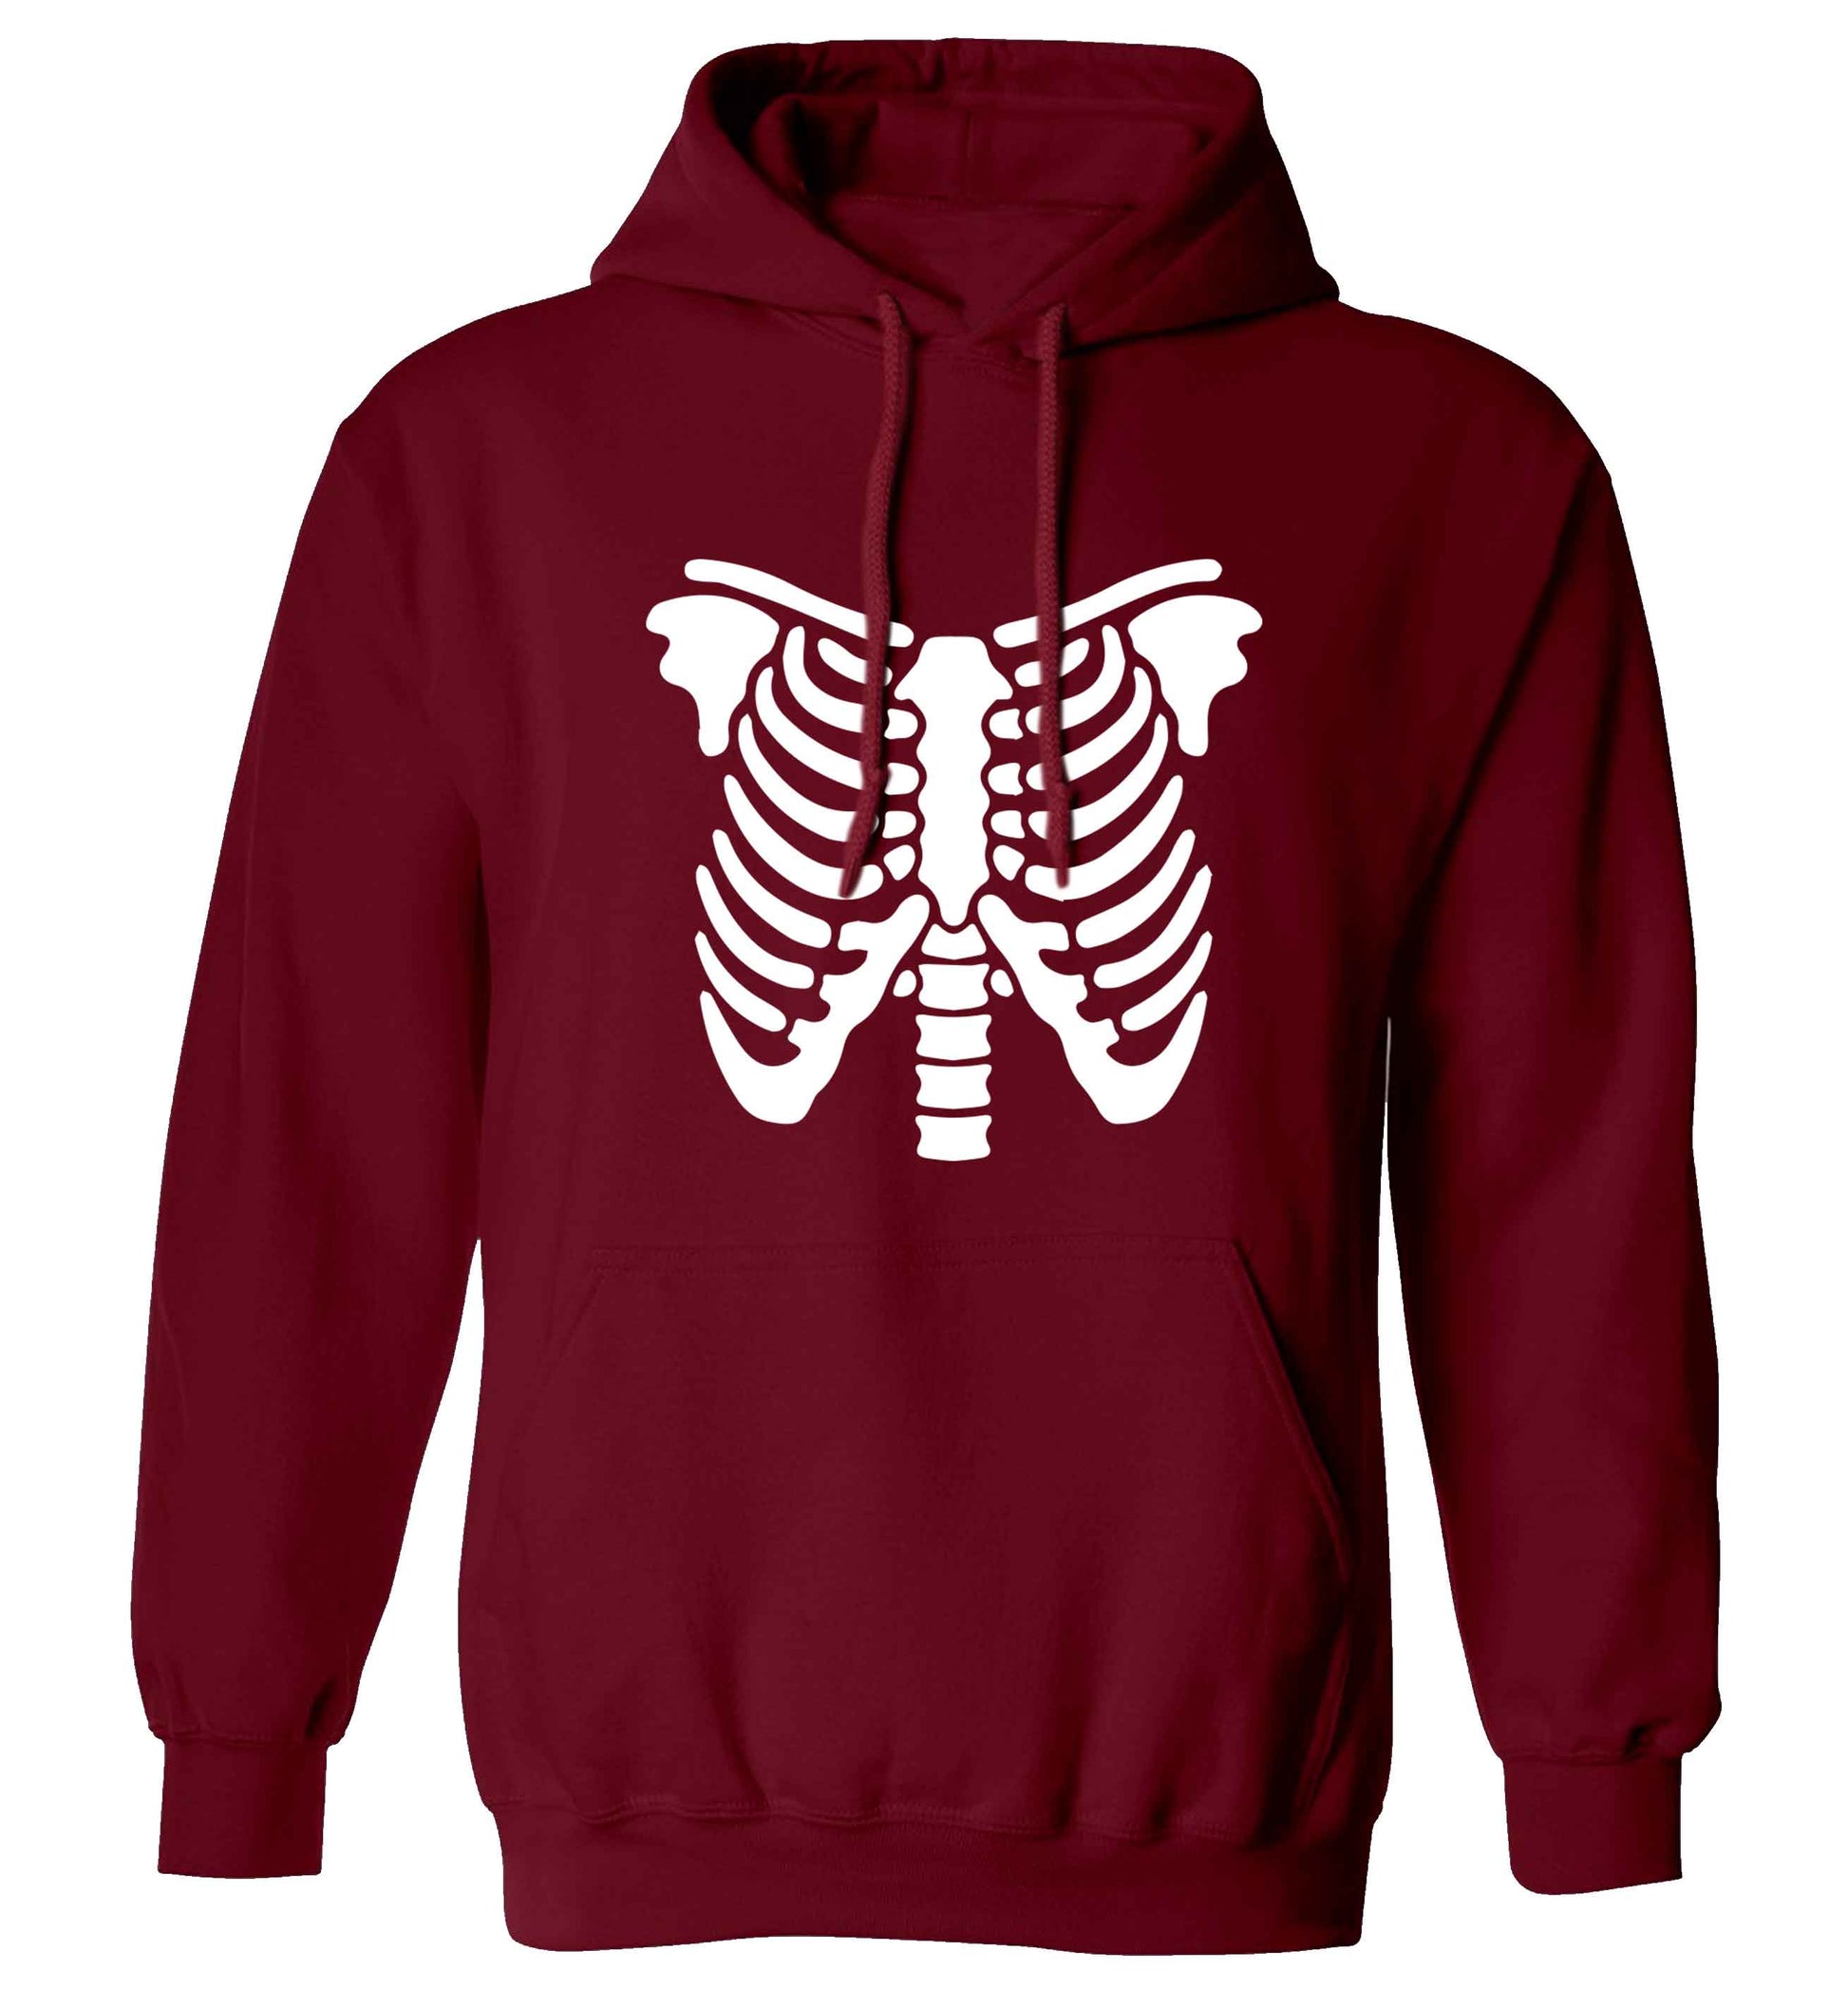 Skeleton ribcage adults unisex maroon hoodie 2XL